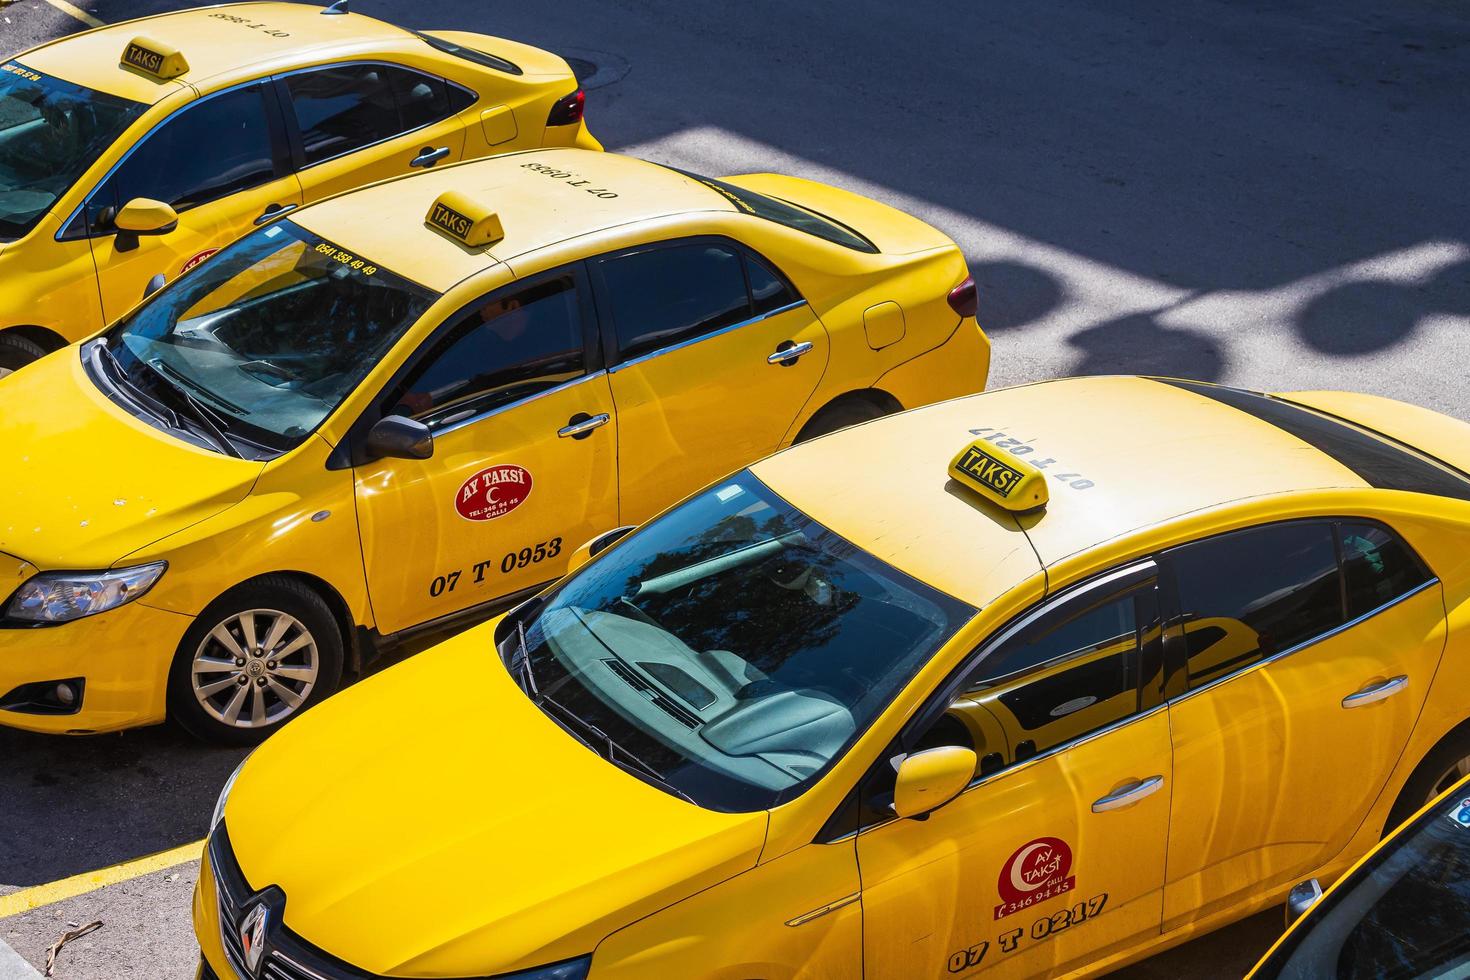 antalya türkei 04. märz 2022 parken von gelben taxiautos auf dem hintergrund einer stadtstraße foto